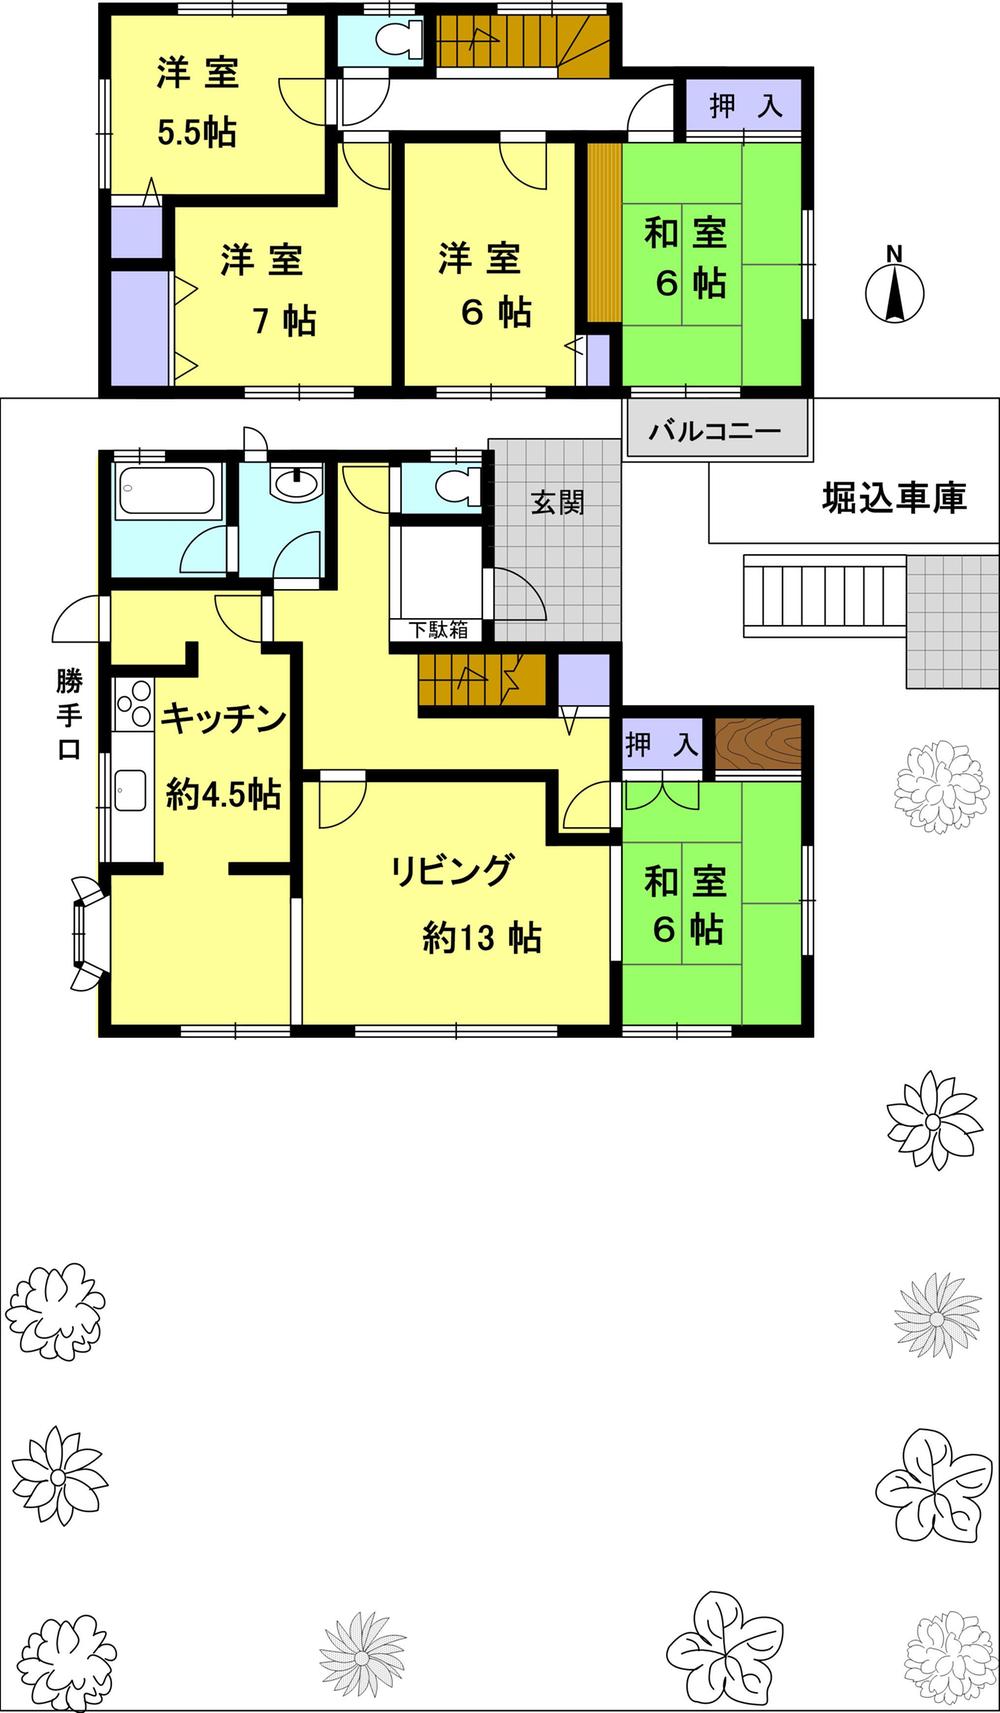 Floor plan. 16.8 million yen, 5LDK, Land area 373.54 sq m , Building area 116.27 sq m